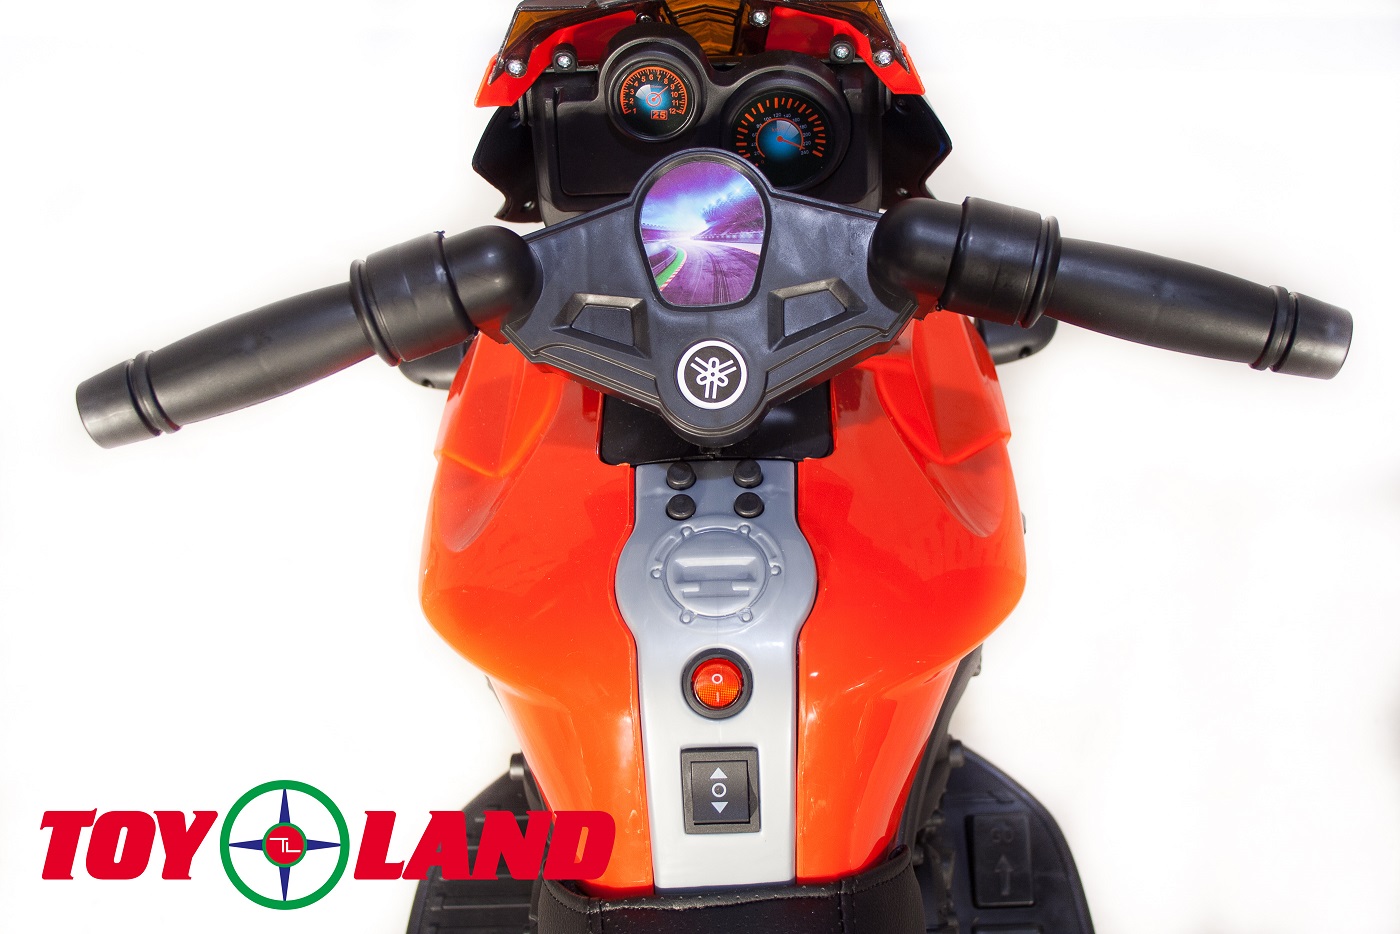 Электромотоцикл ToyLand jc919 красного цвета  